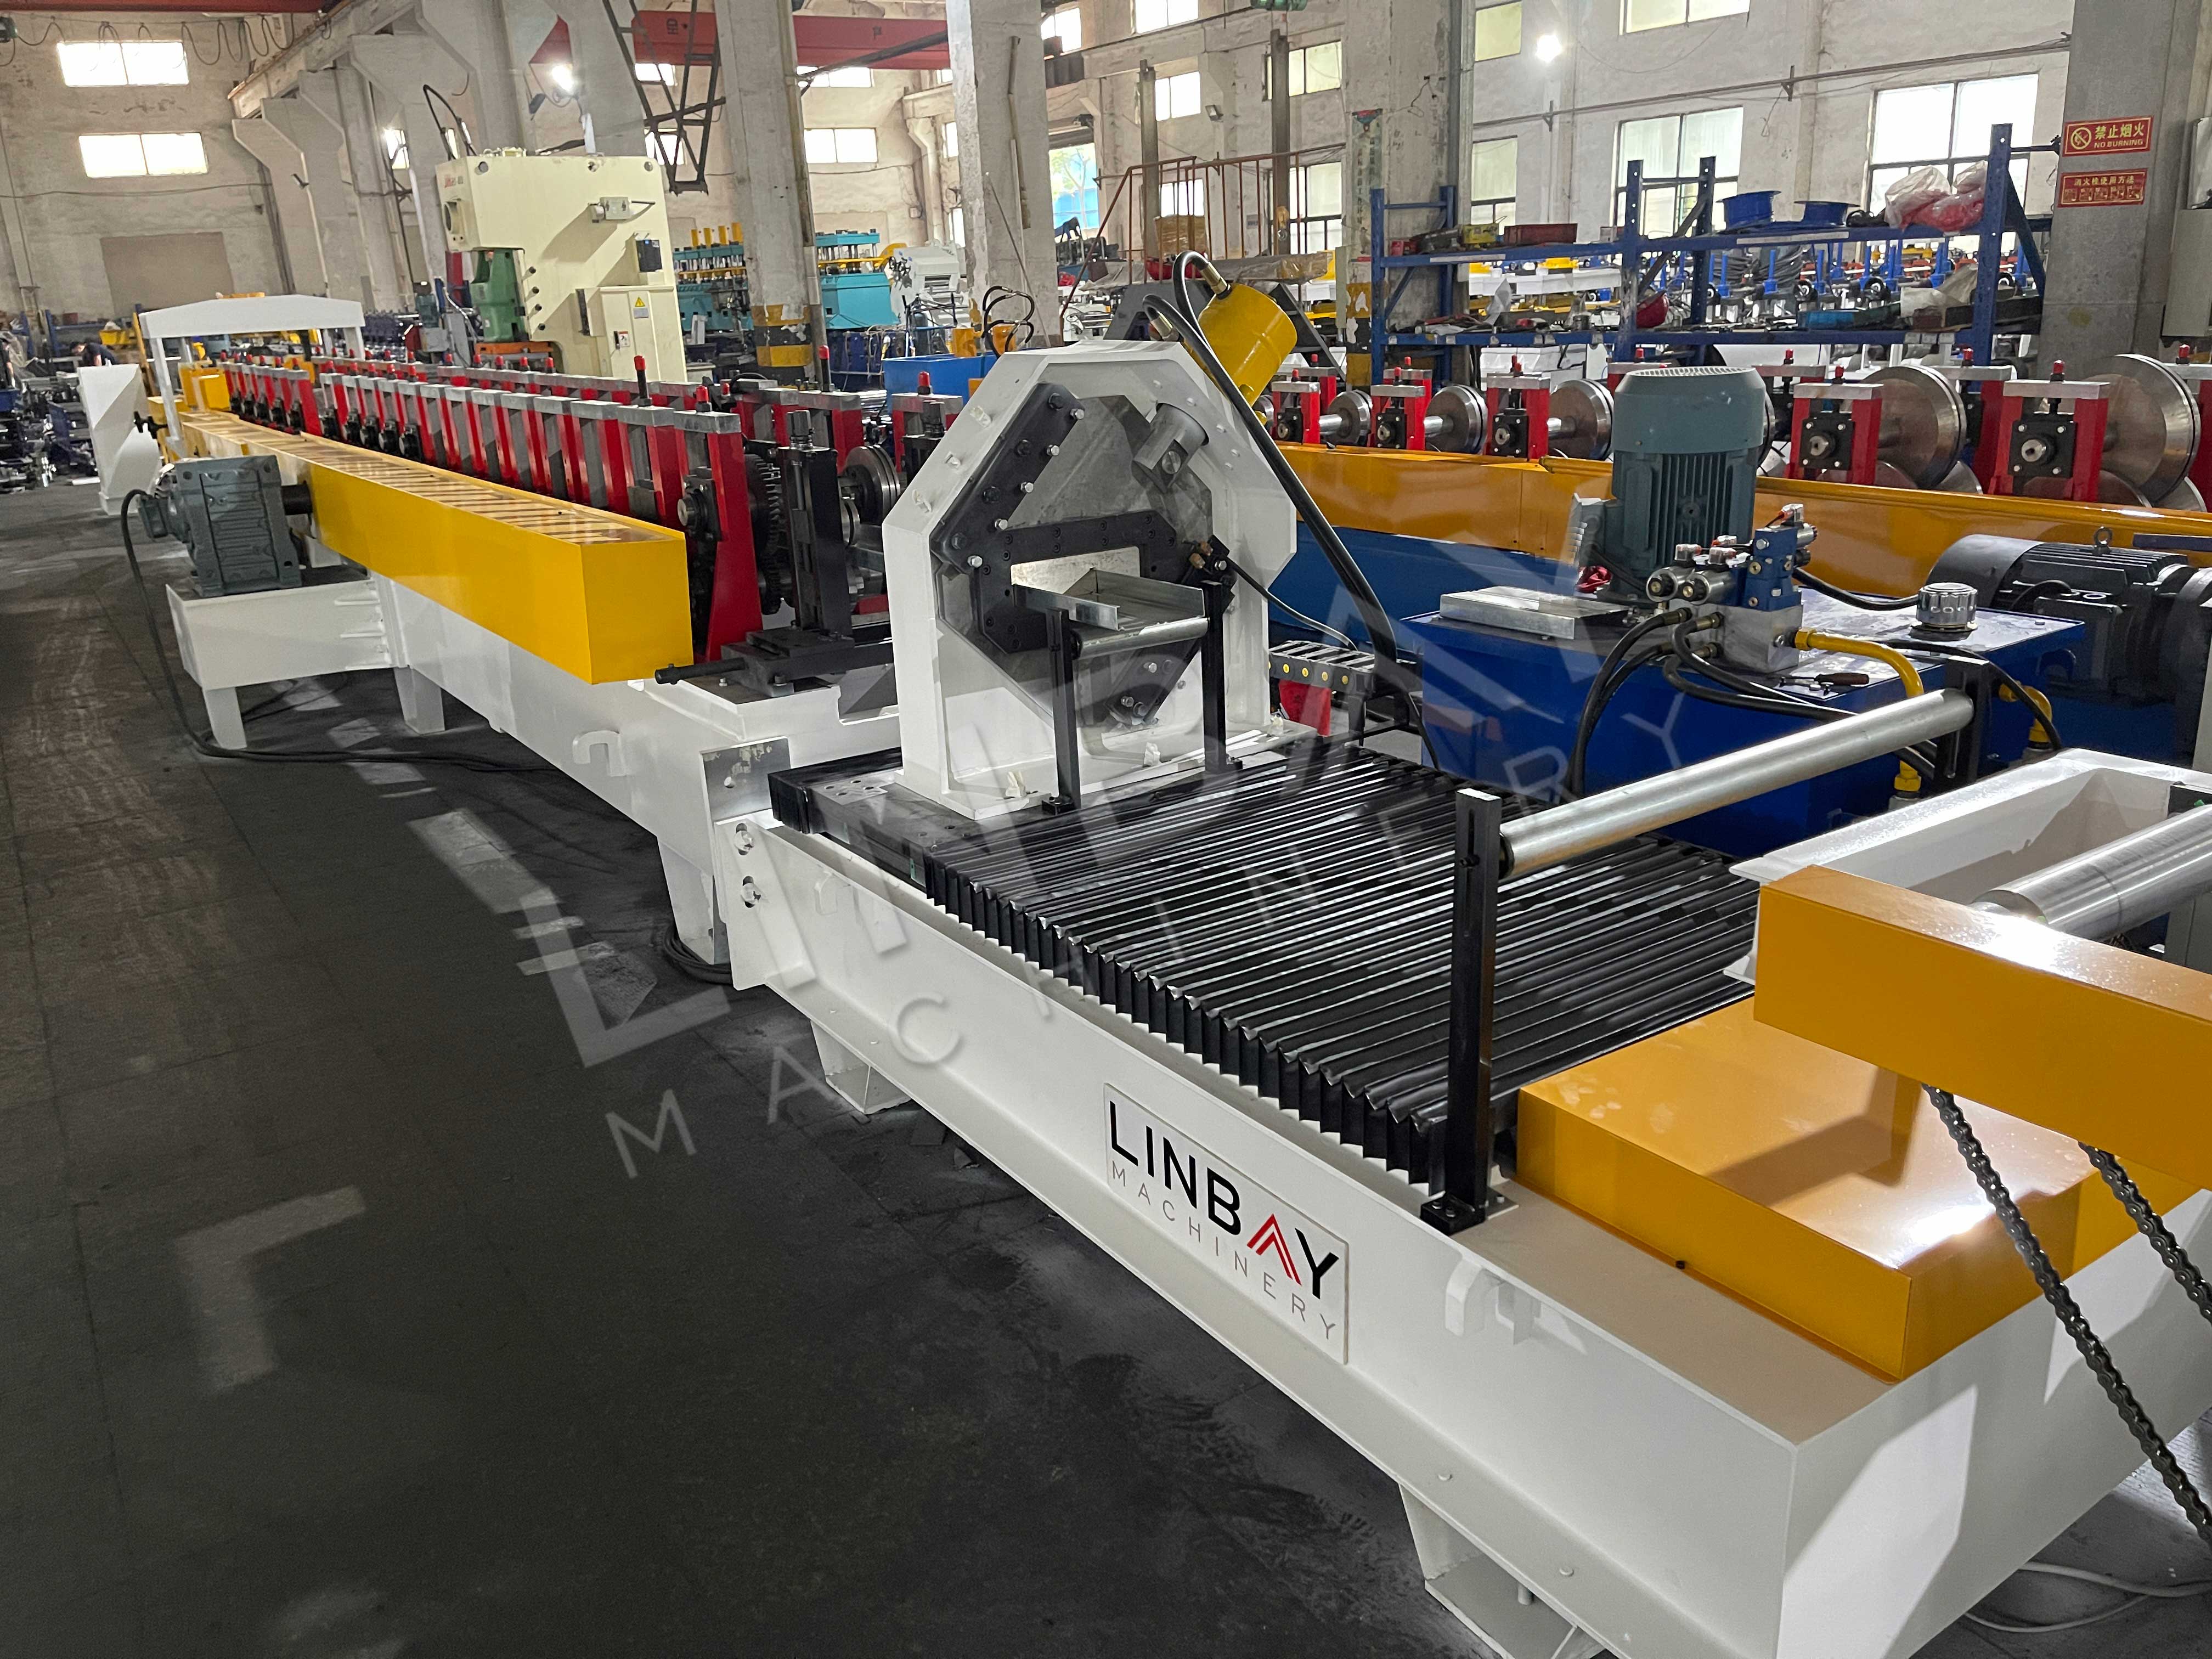 LINBAY-Exporta la Máquina Perfiladora de Racks Industriales in Vietnam